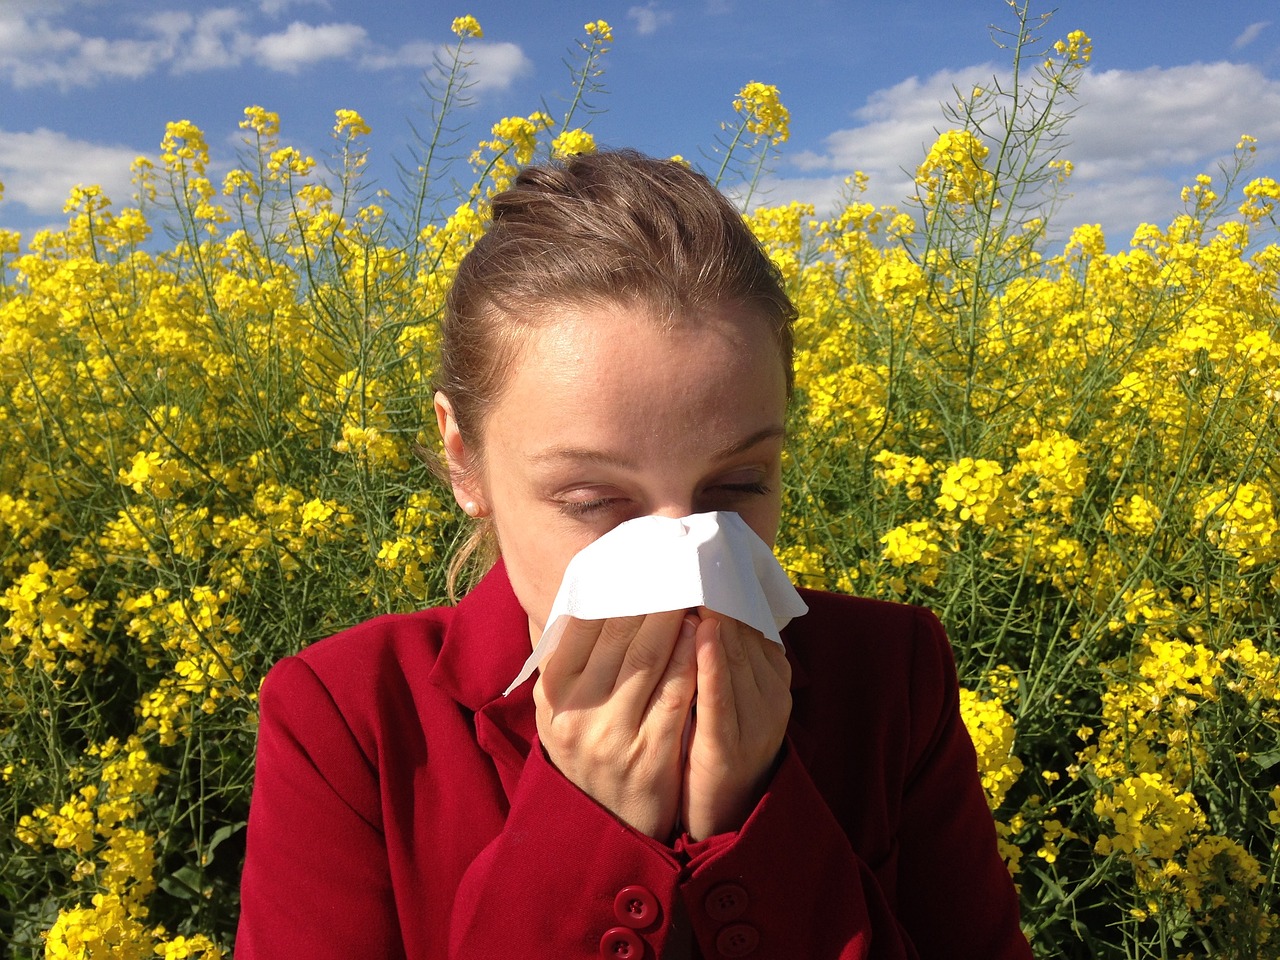 Skąd biorą się alergie? Czy można się ich pozbyć?